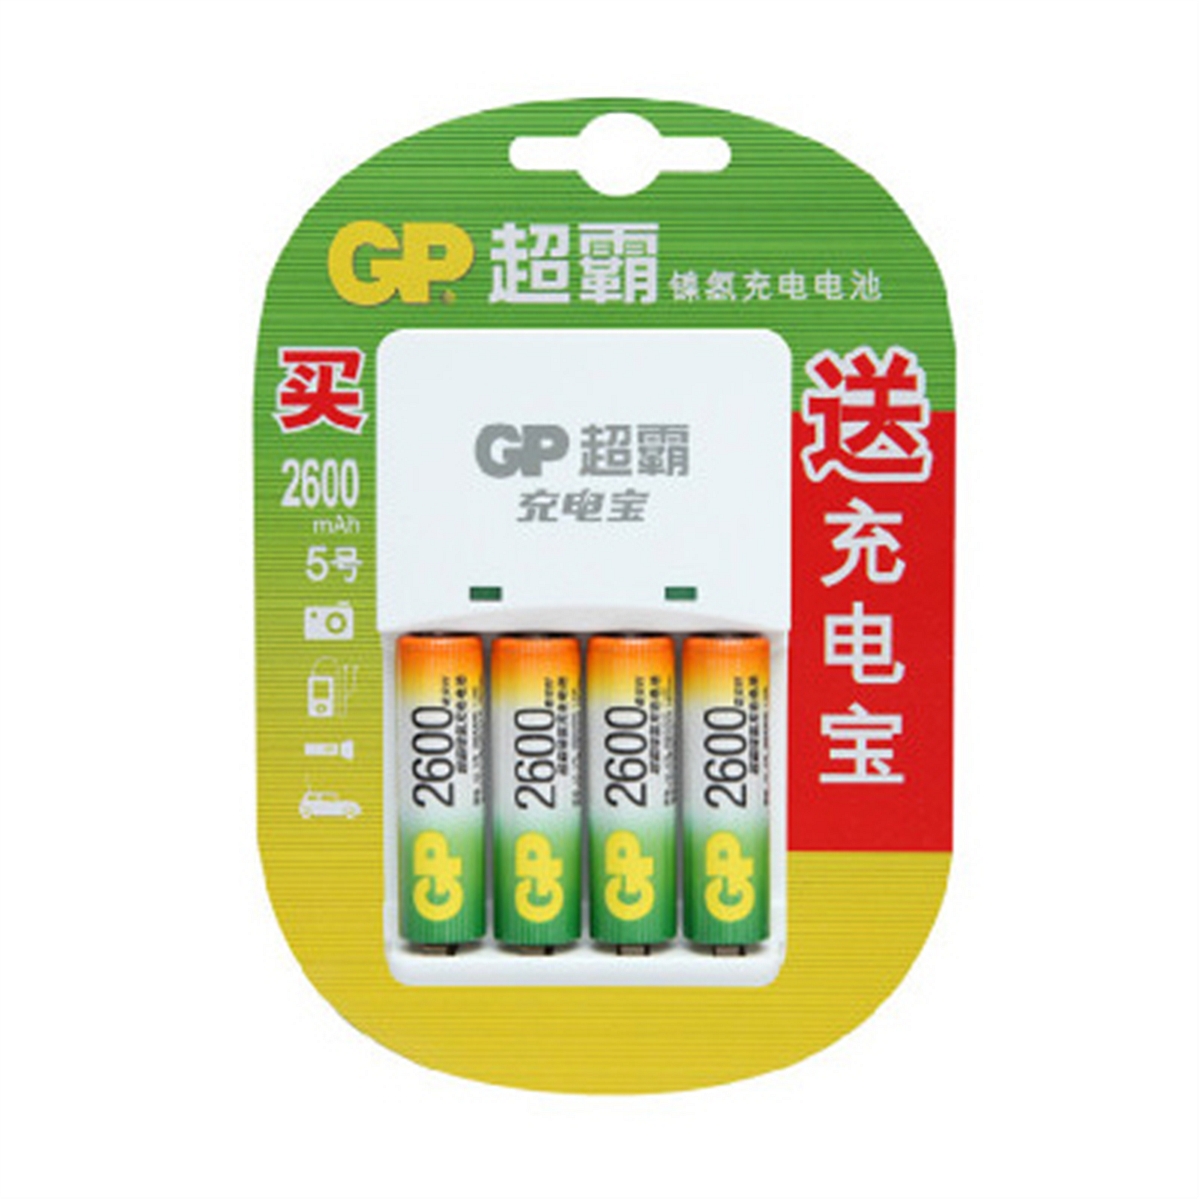 GP超霸充电器+4节5号2600mA电池 充电电池充电器(套)